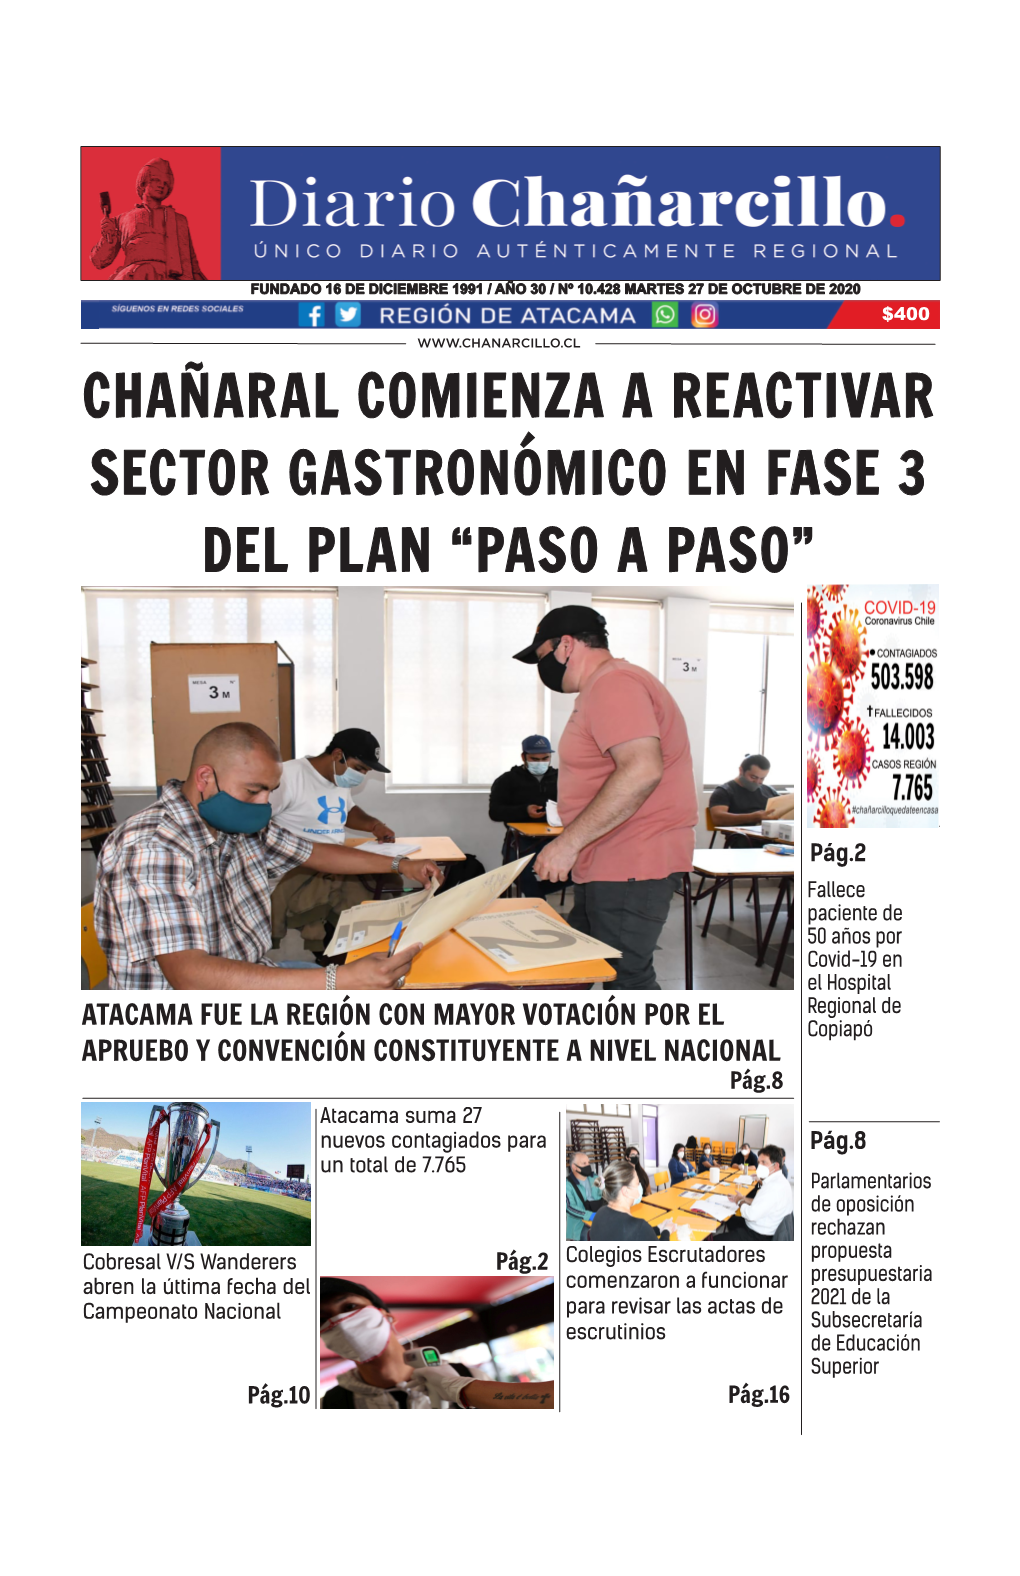 Chañaral Comienza a Reactivar Sector Gastronómico En Fase 3 Del Plan “Paso a Paso”